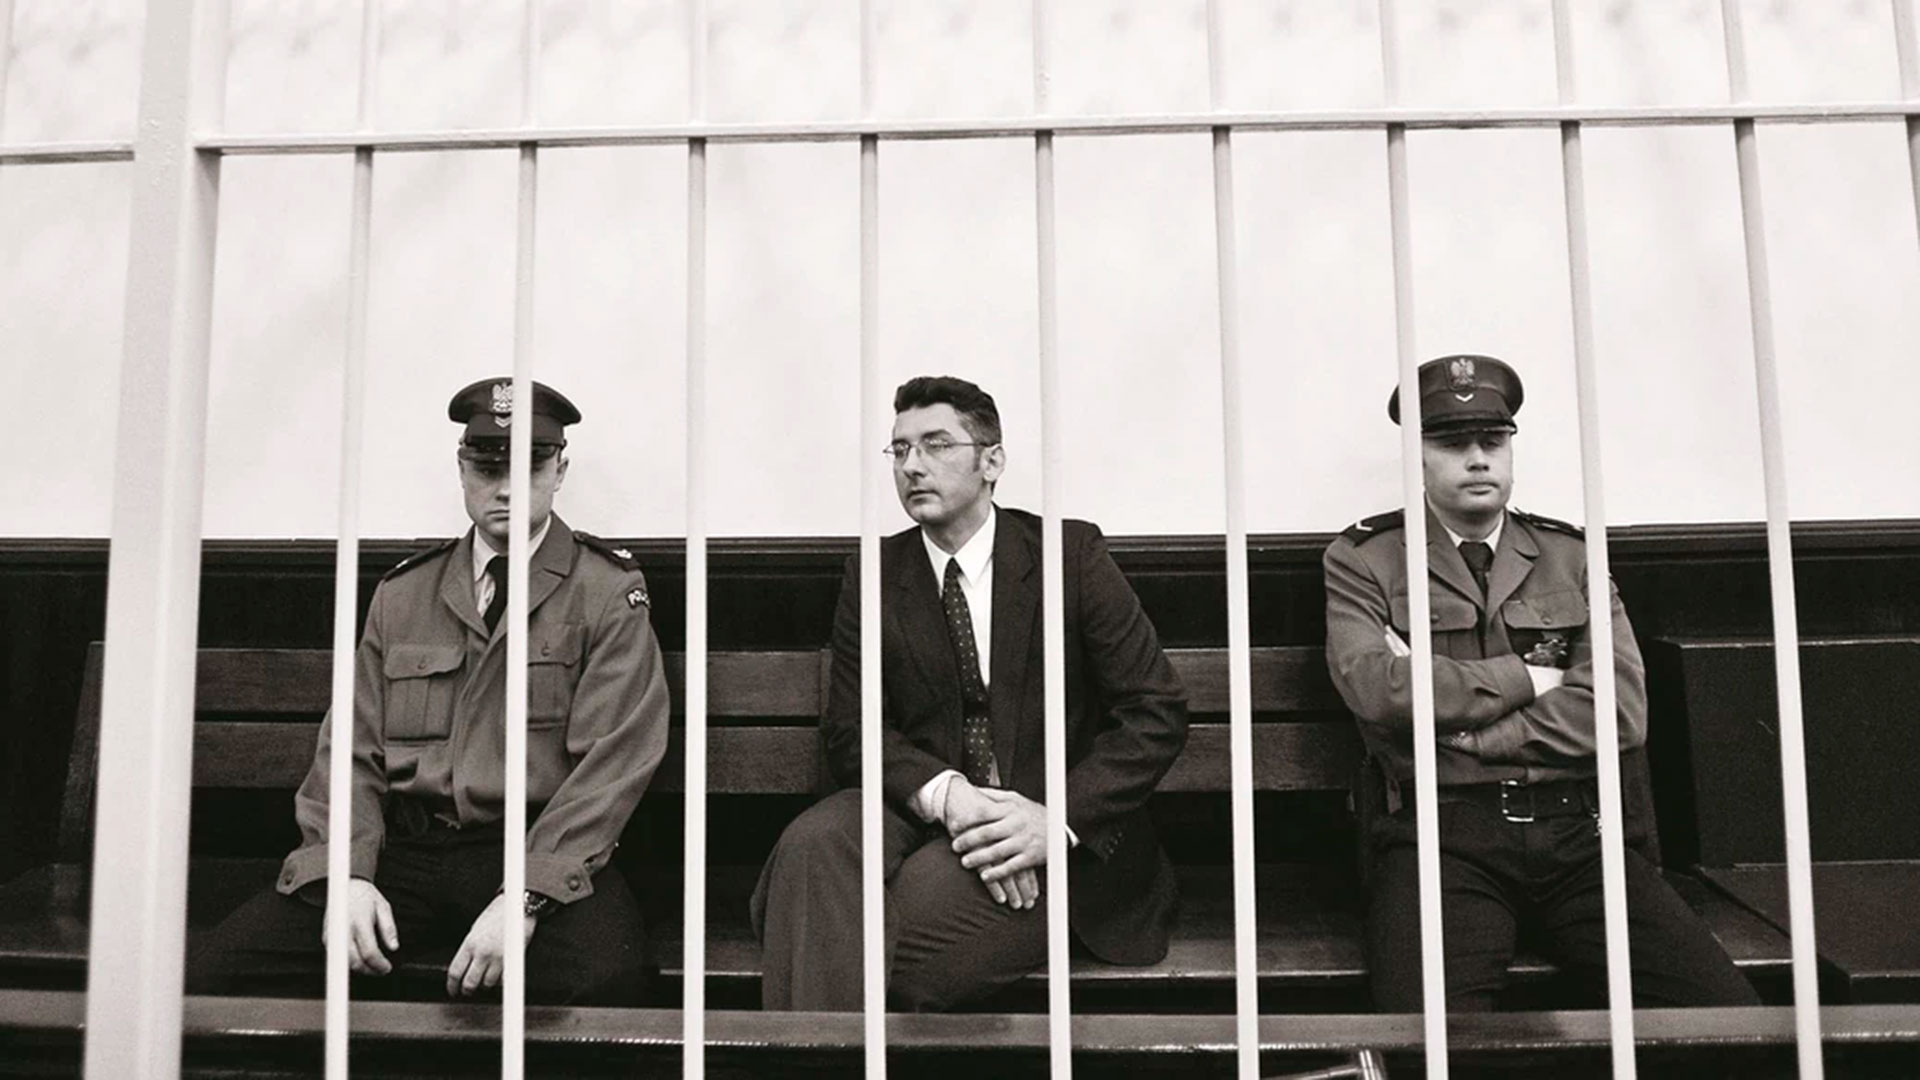 Bala durante el juicio en el que fue condenado por el crimen del publicista (Newsweek)